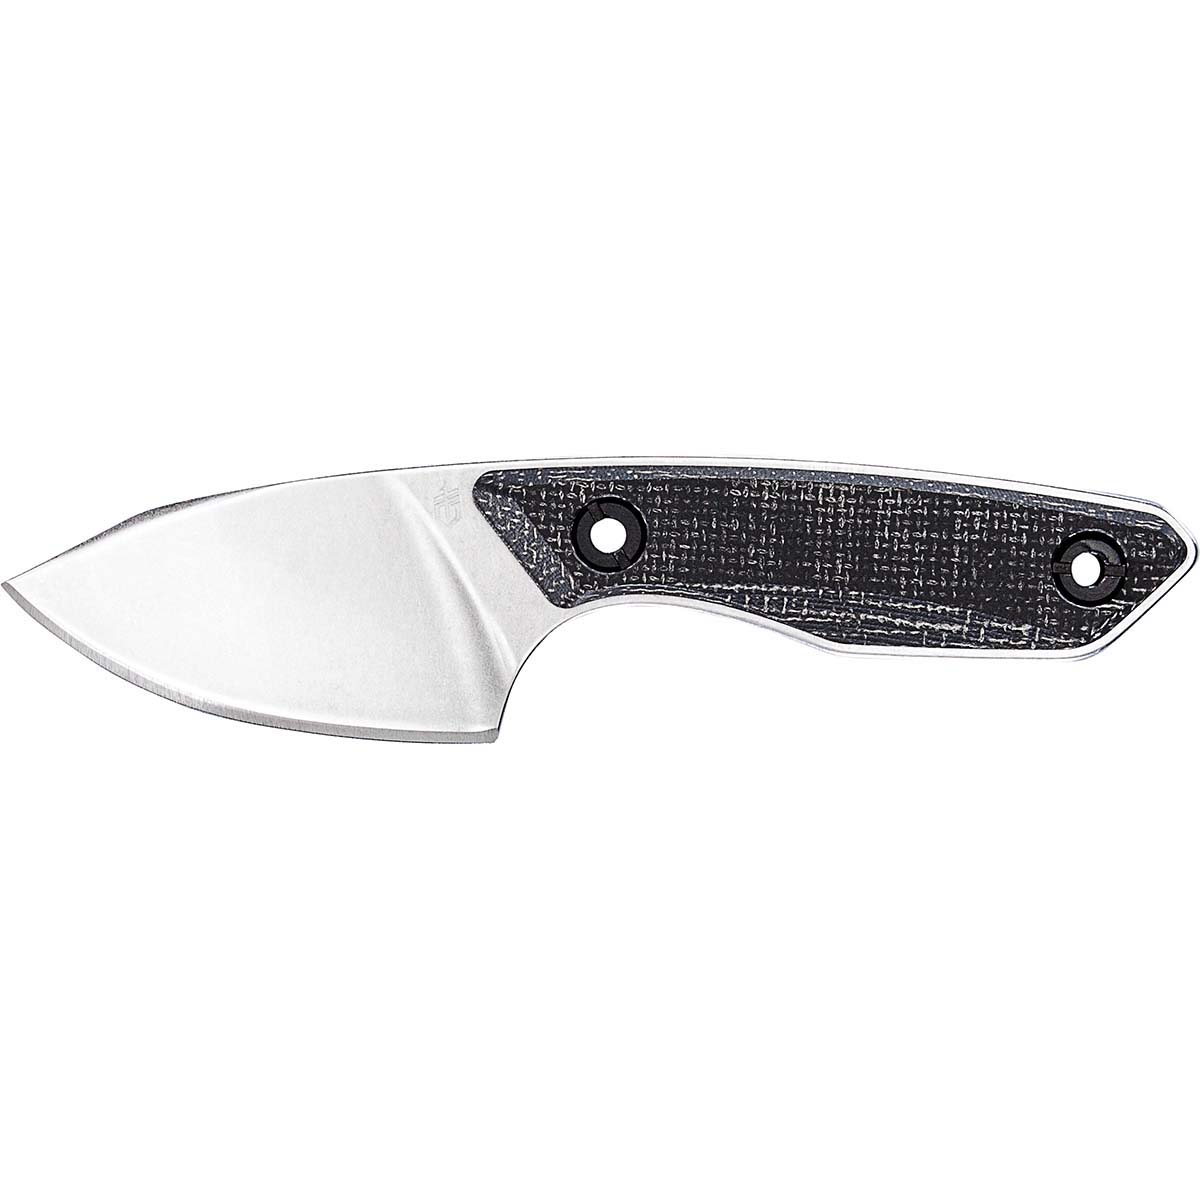 Gerber Stowe Micarta Fixed Blade Knife